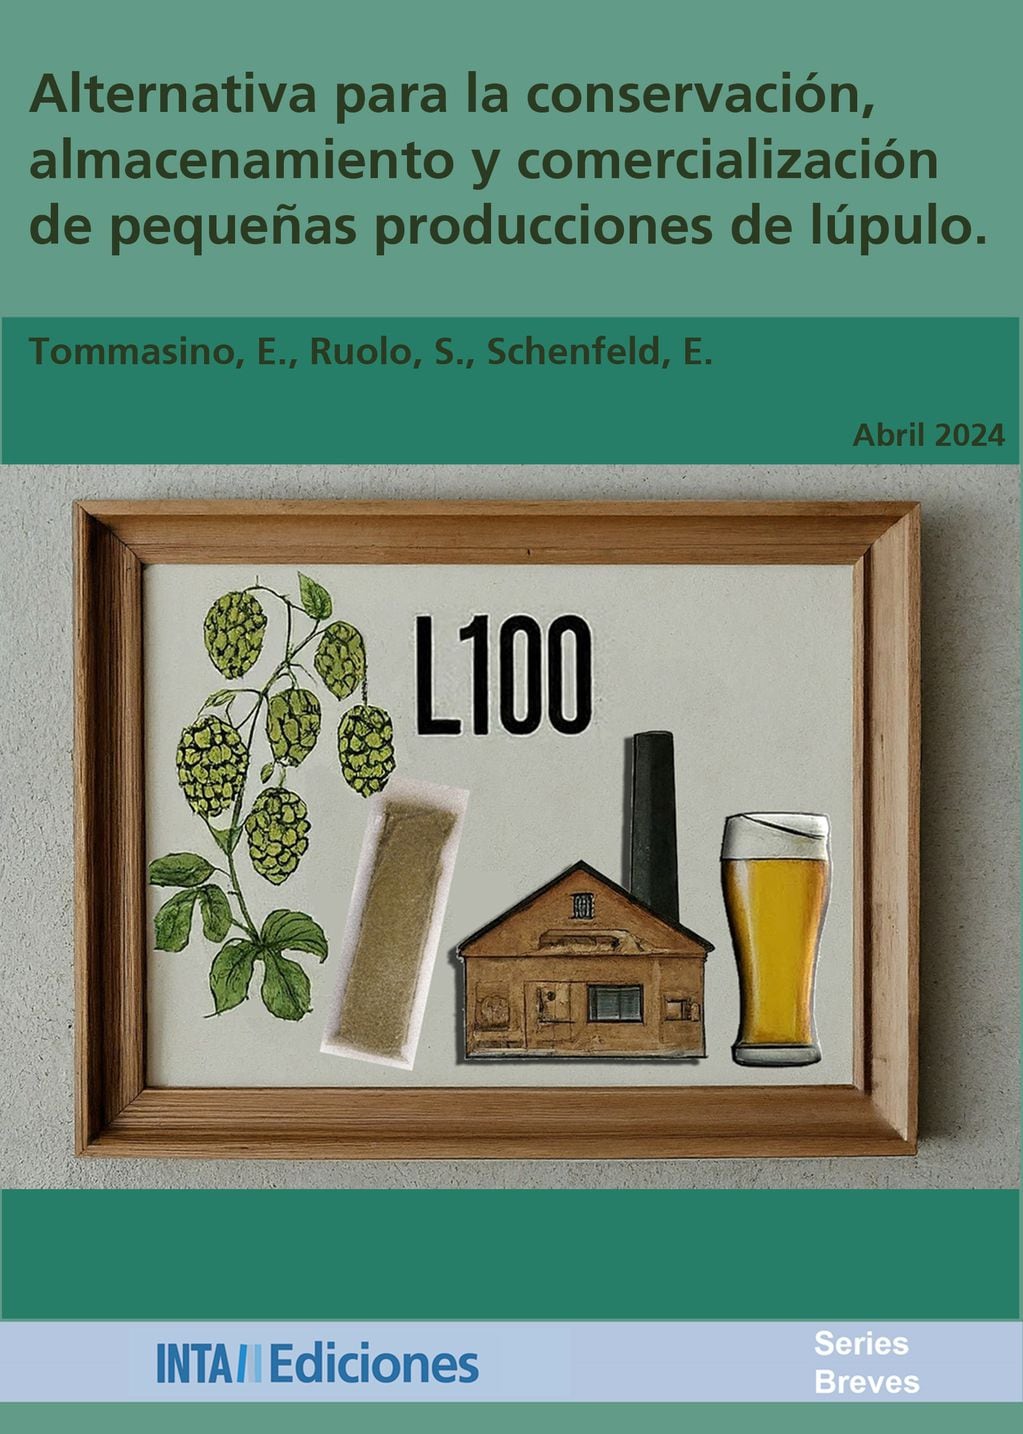 Informe “Alternativa para la conservación, almacenamiento y comercialización de pequeñas producciones de lúpulo”.